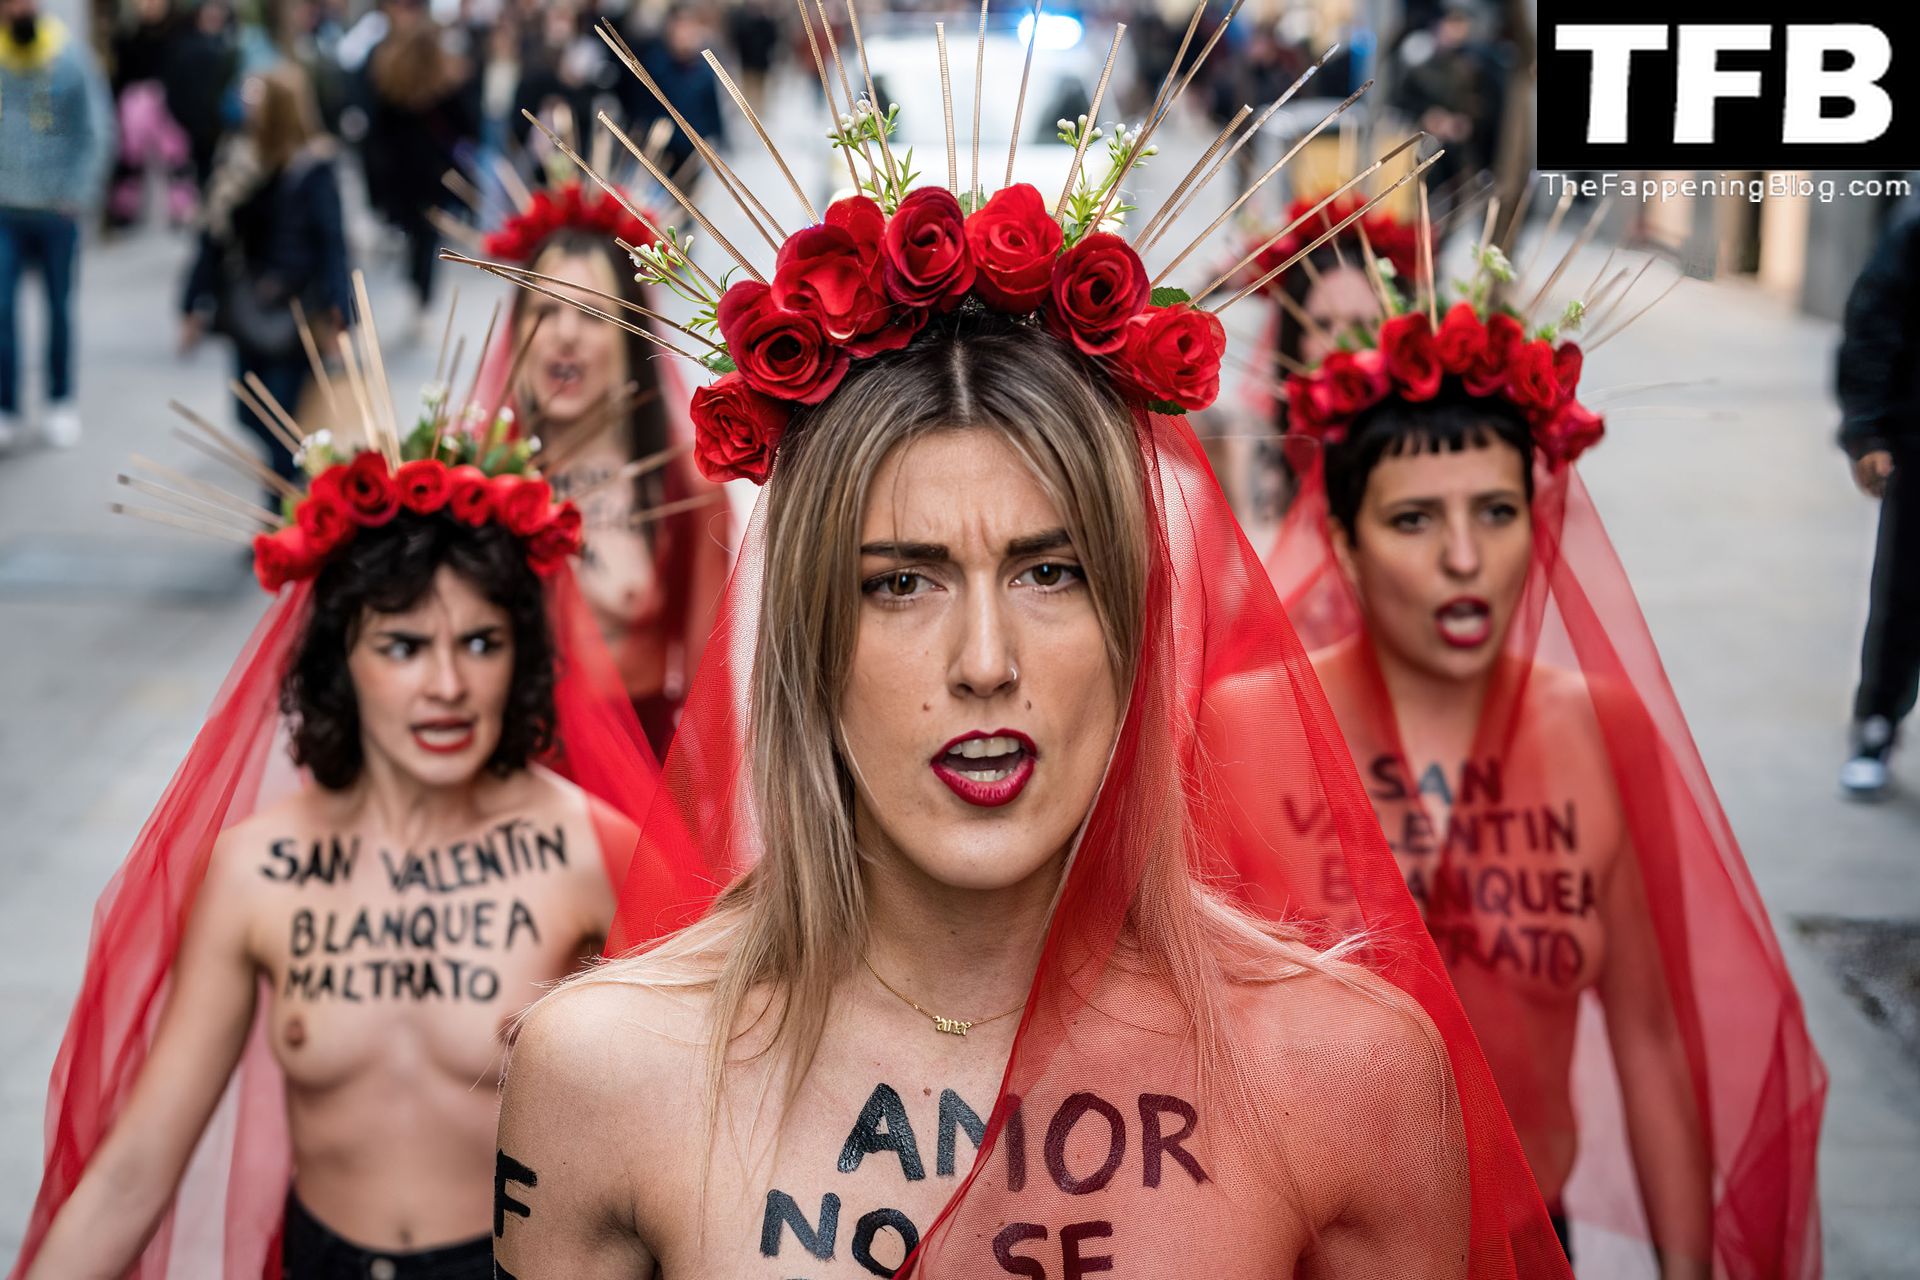 FEMEN-Topless-Girls-The-Fappening-Blog-2.jpg